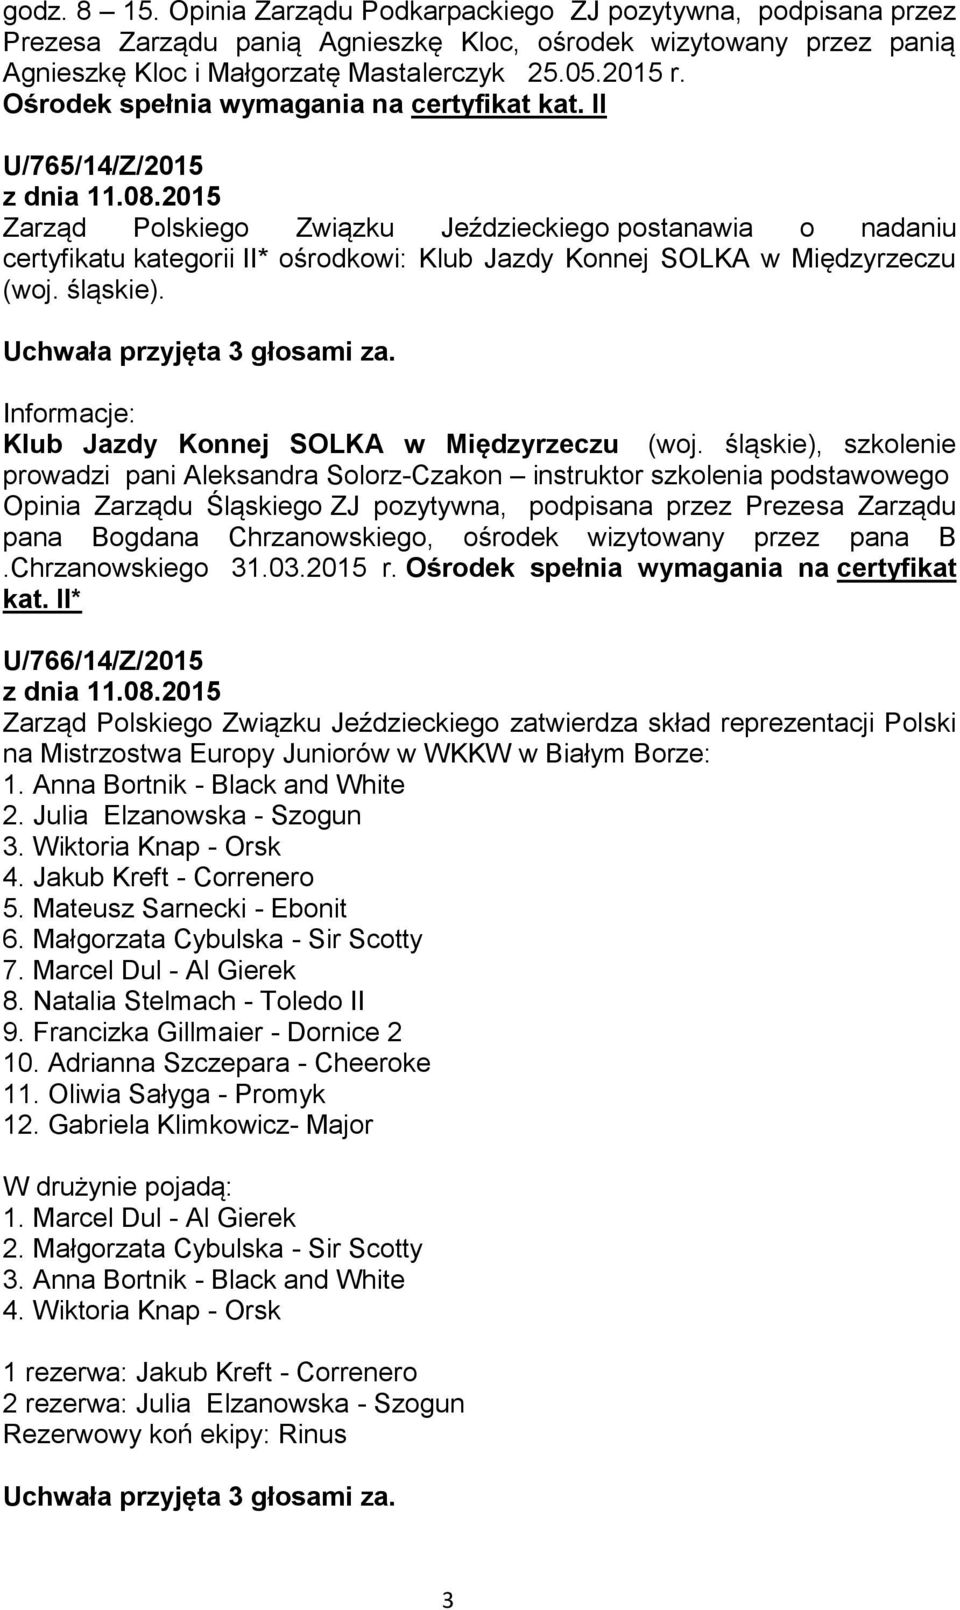 II U/765/14/Z/2015 Zarząd Polskiego Związku Jeździeckiego postanawia o nadaniu certyfikatu kategorii II* ośrodkowi: Klub Jazdy Konnej SOLKA w Międzyrzeczu (woj. śląskie).